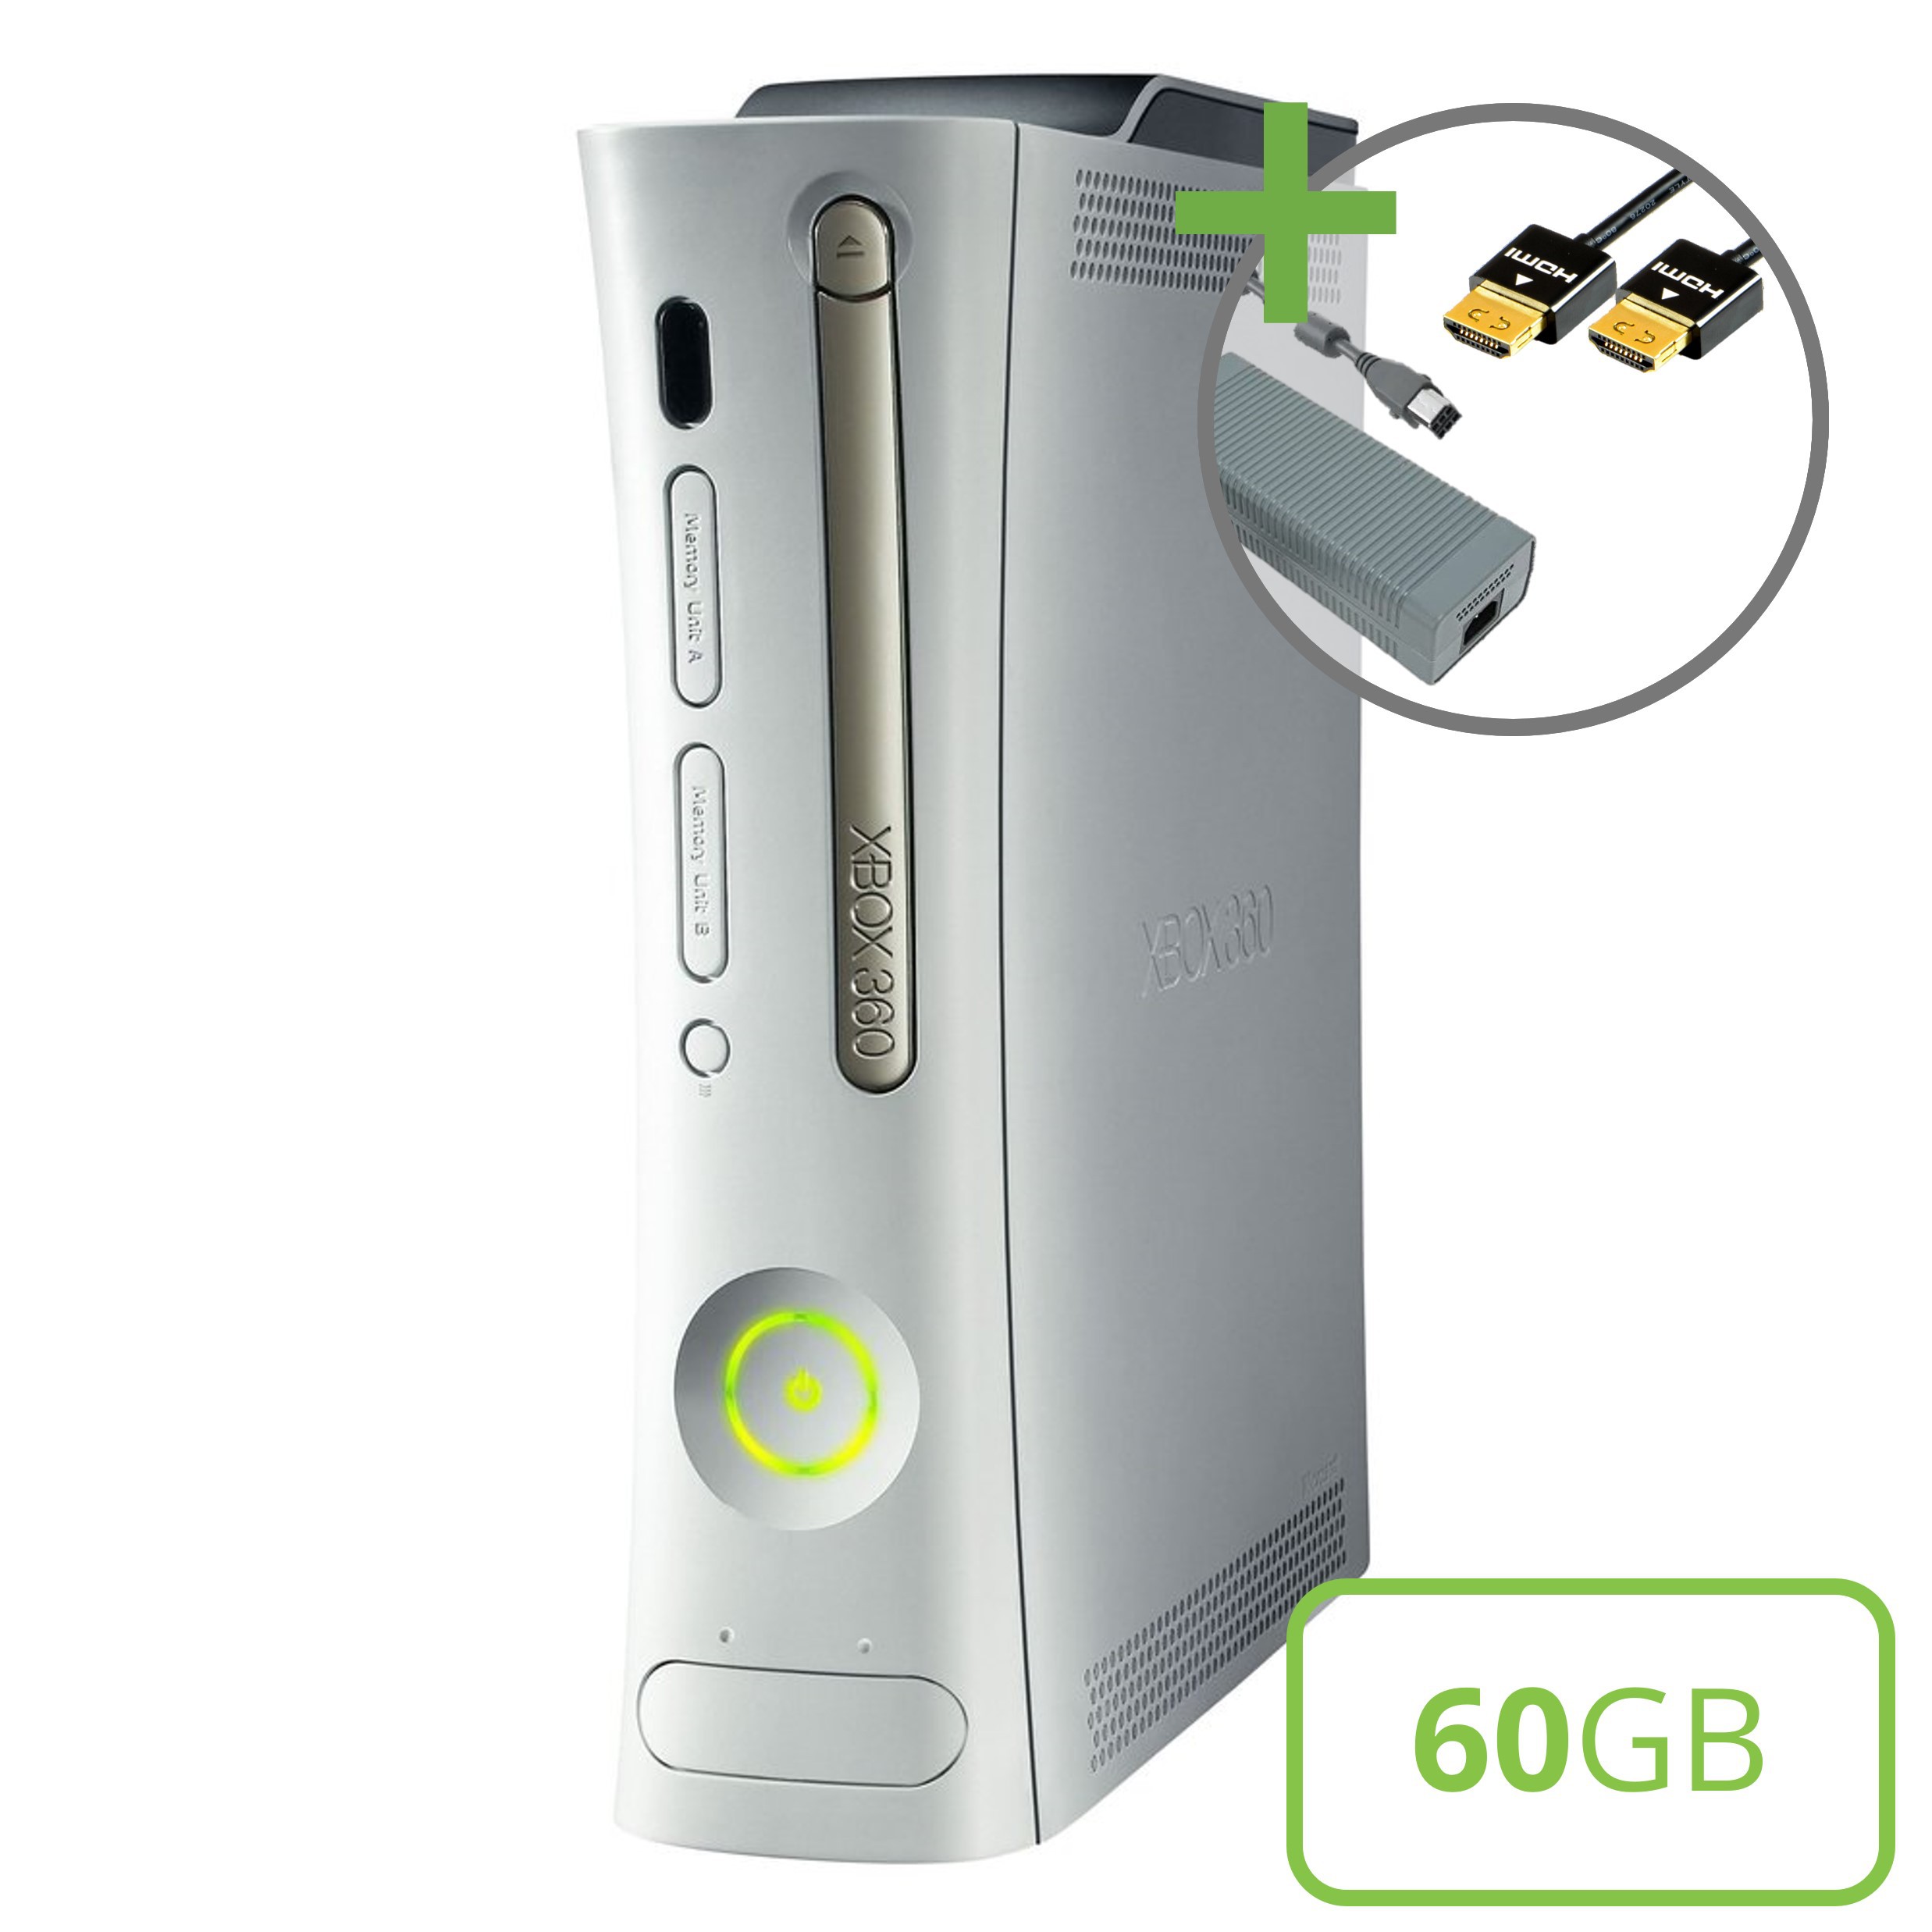 Microsoft Xbox 360 Premium Console (HDMI) - 60GB Kopen | Xbox 360 Hardware